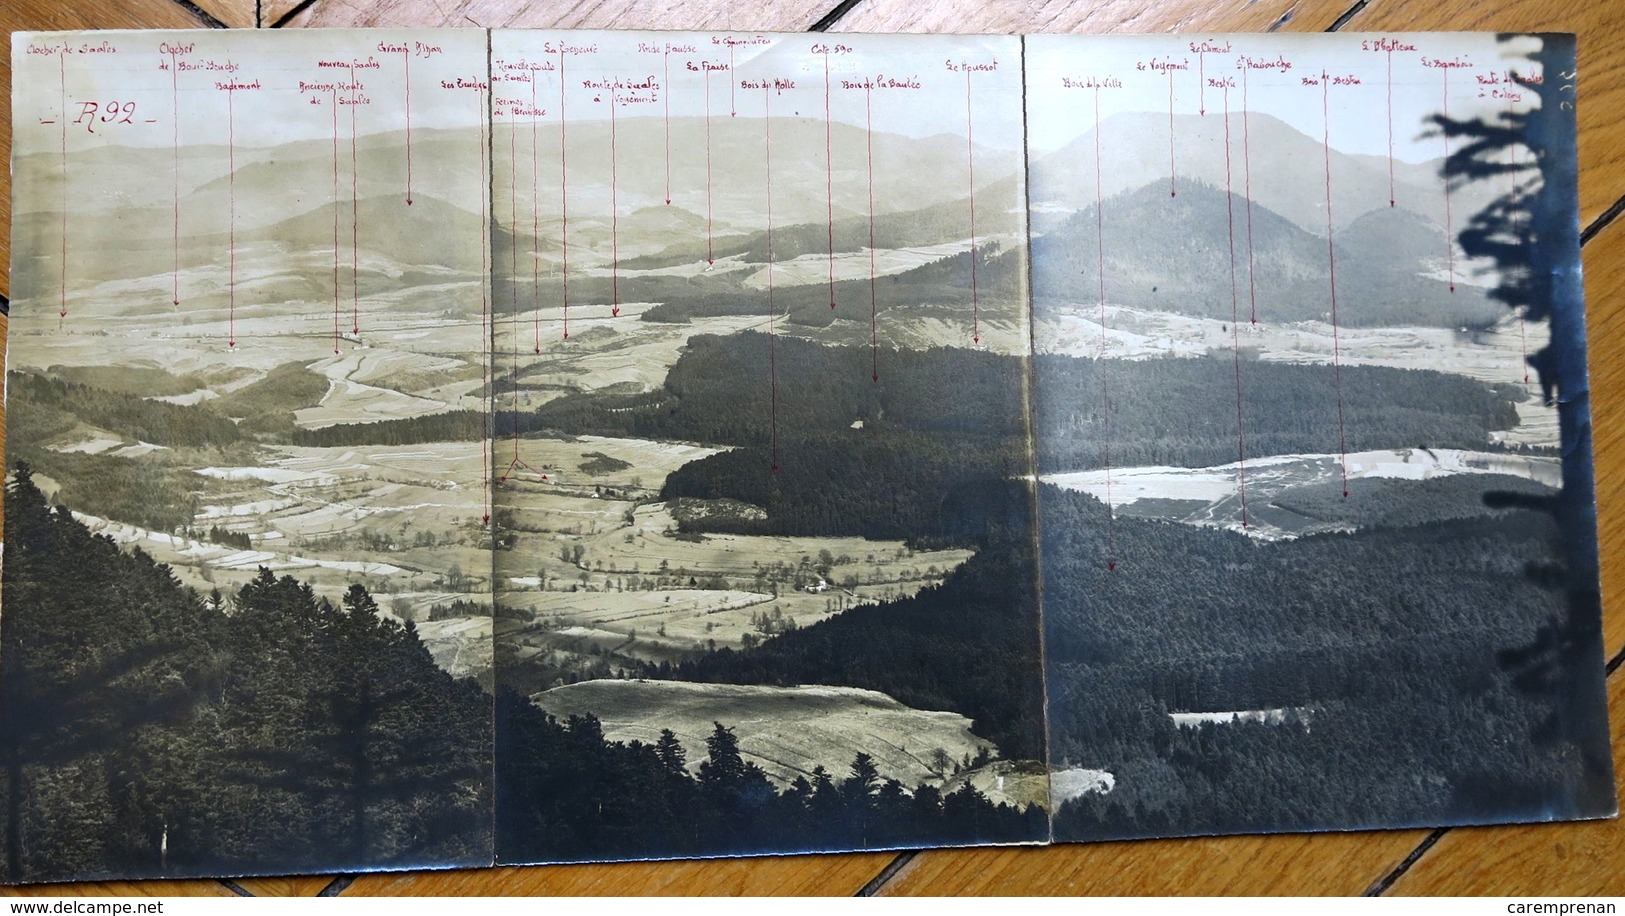 Première guerre mondiale. Front des Vosges : cartes et photographies (artillerie)